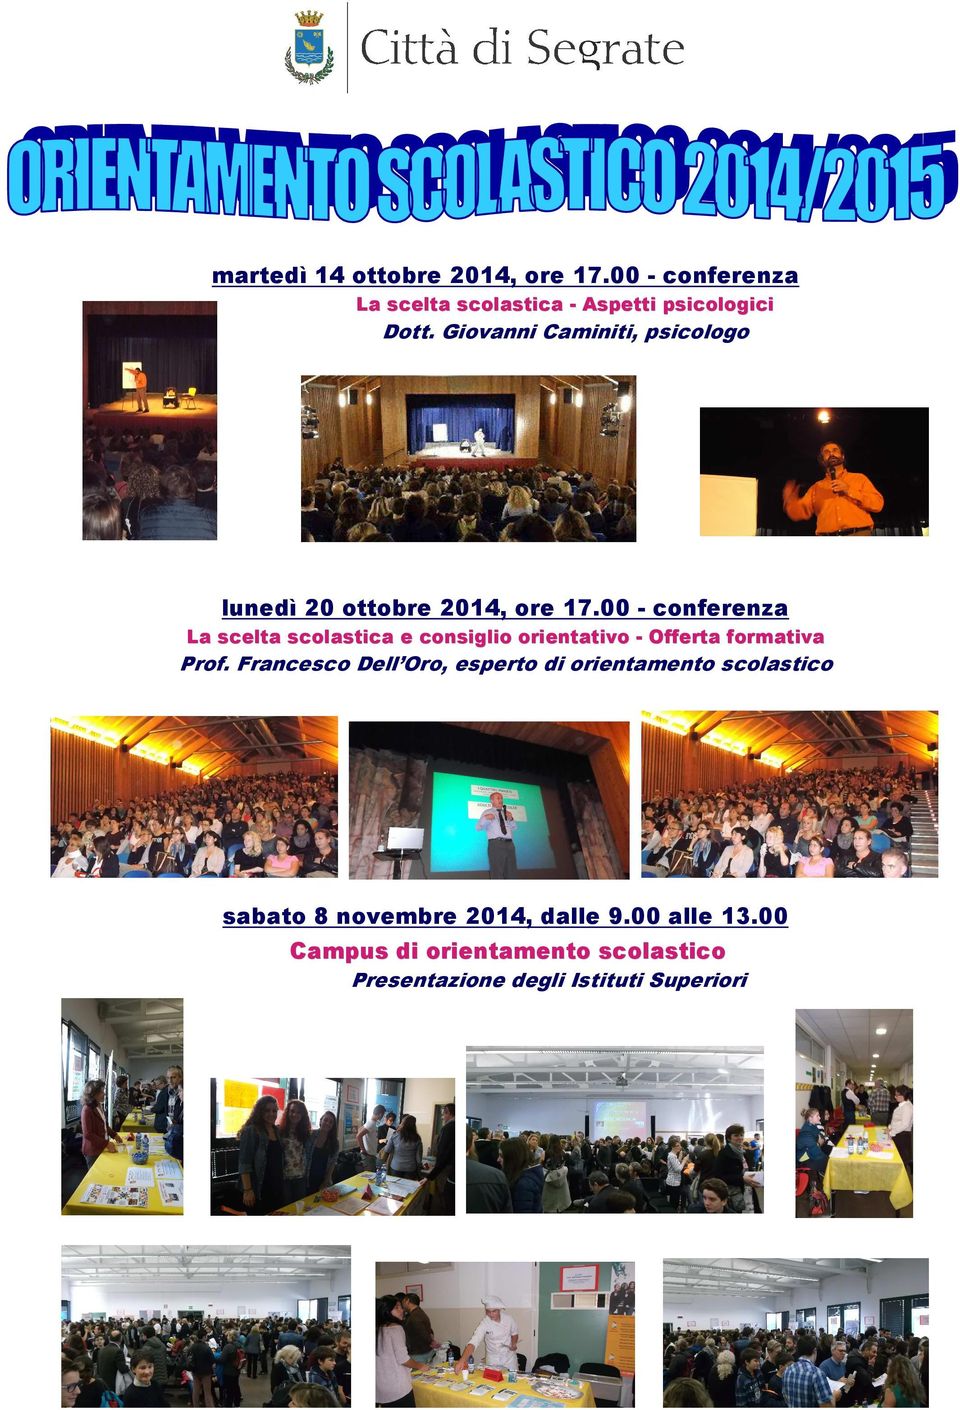 00 - conferenza La scelta scolastica e consiglio orientativo - Offerta formativa Prof.